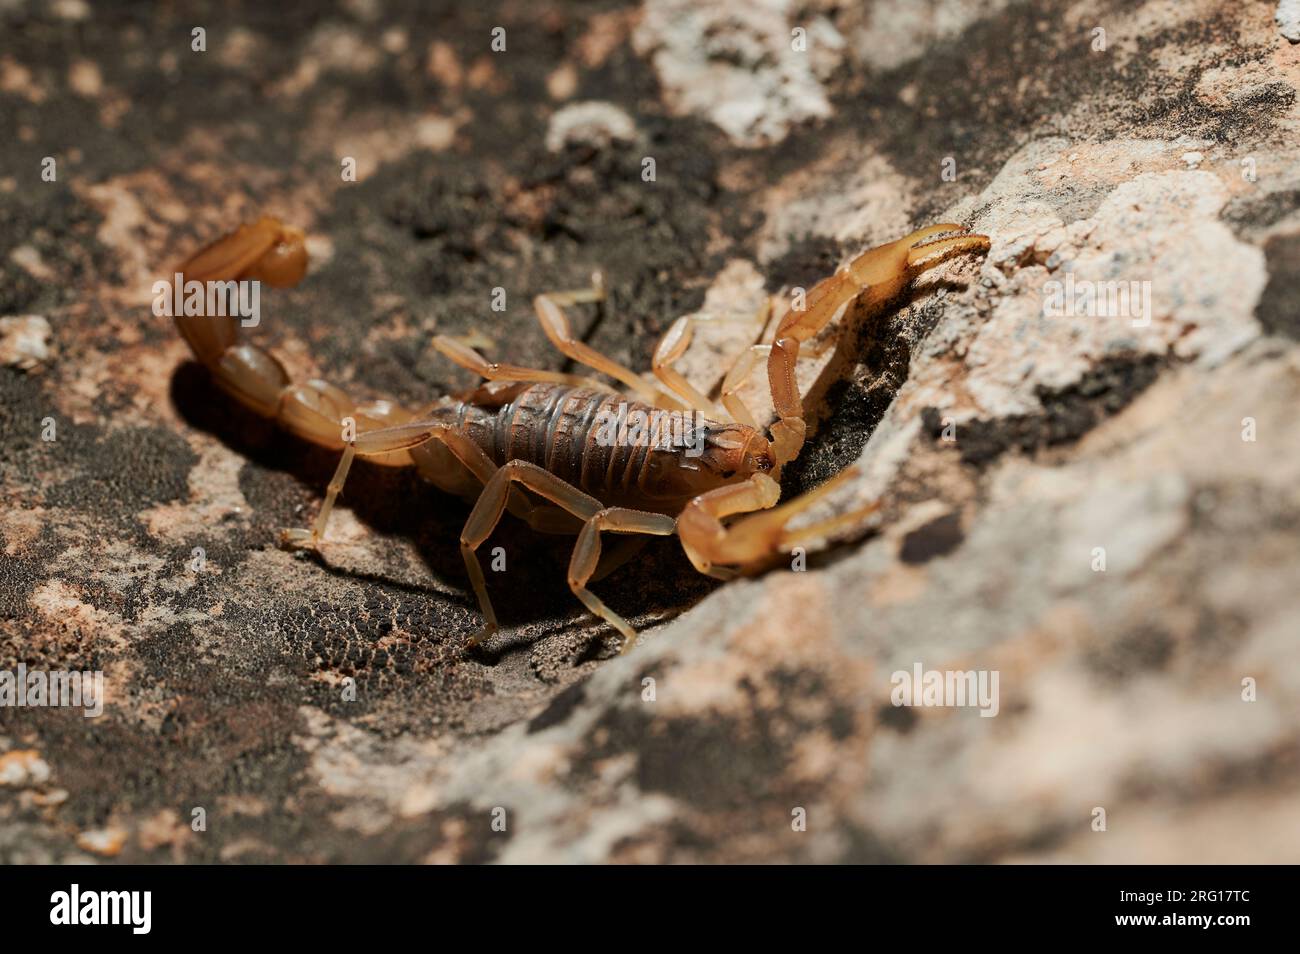 Side view of brown scorpion walking on rocky terrain in daylight Stock Photo